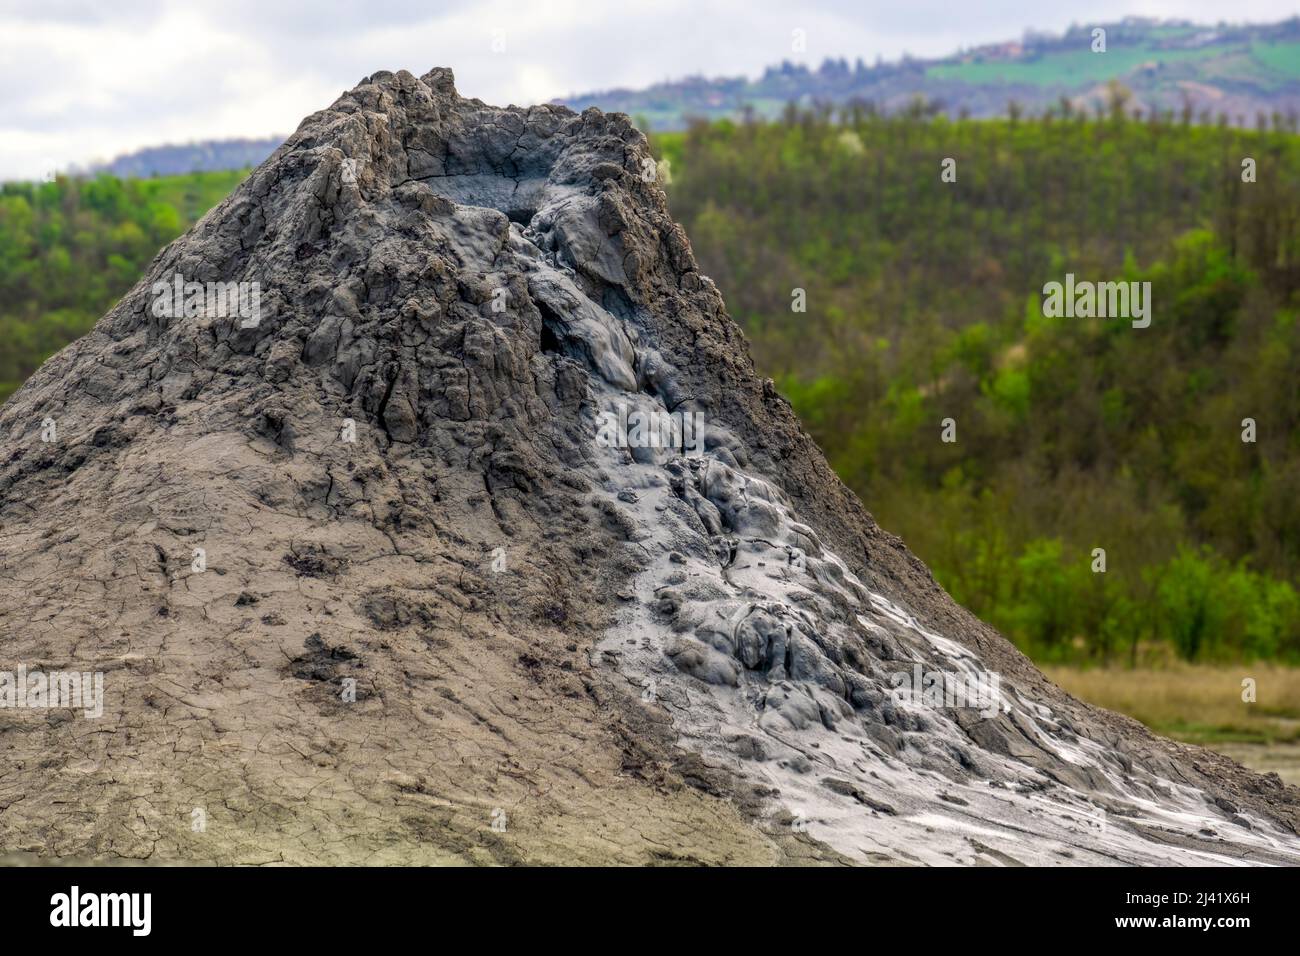 Vulcano di fango o cupola di fango in Italia, fenomeno geologico per eruzione di fango, acqua e gas metano Foto Stock